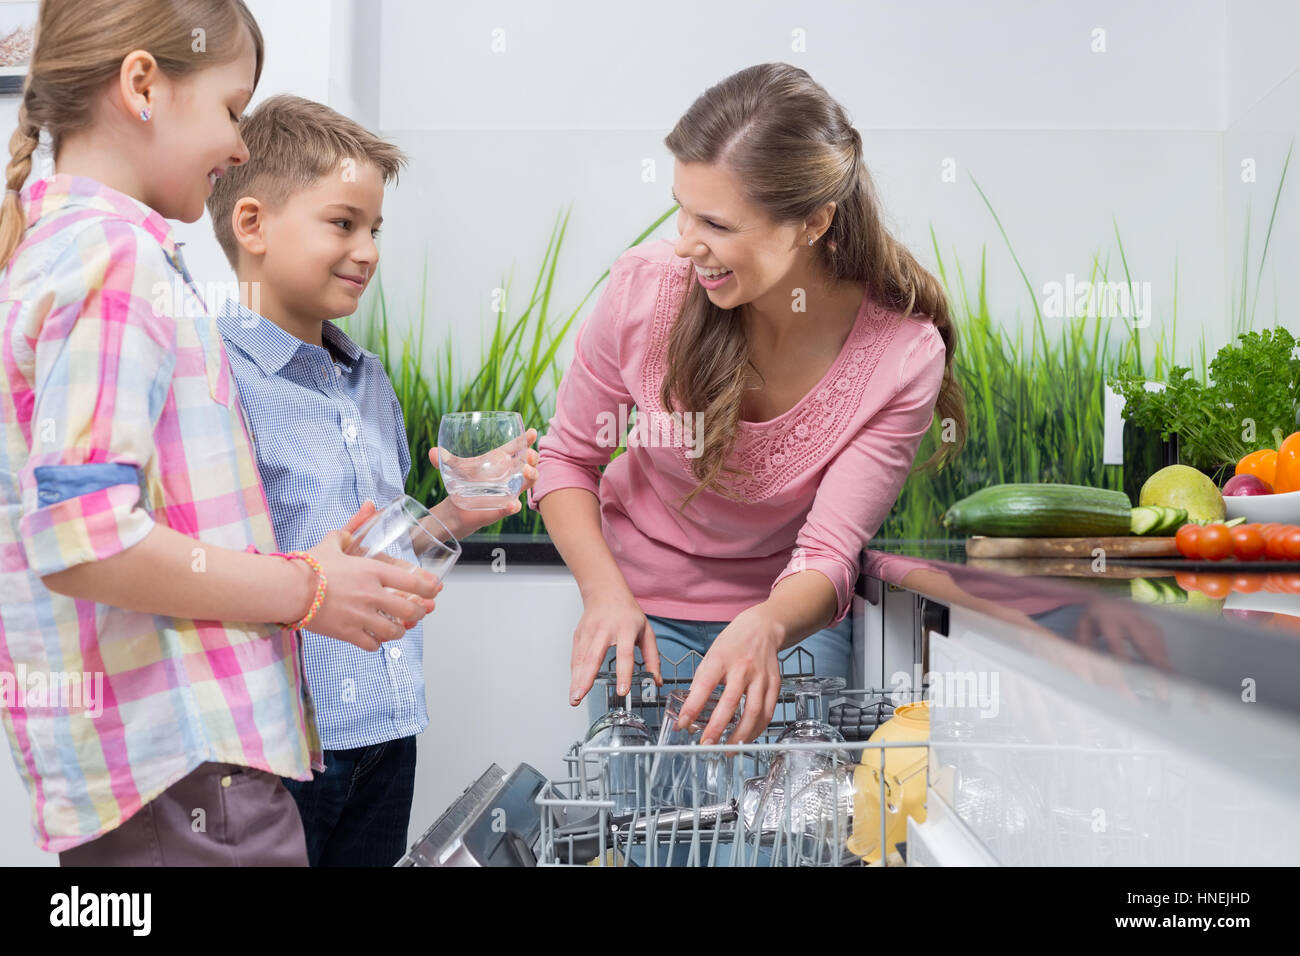 La mère et les enfants heureux de placer dans le lave-vaisselle verres Banque D'Images